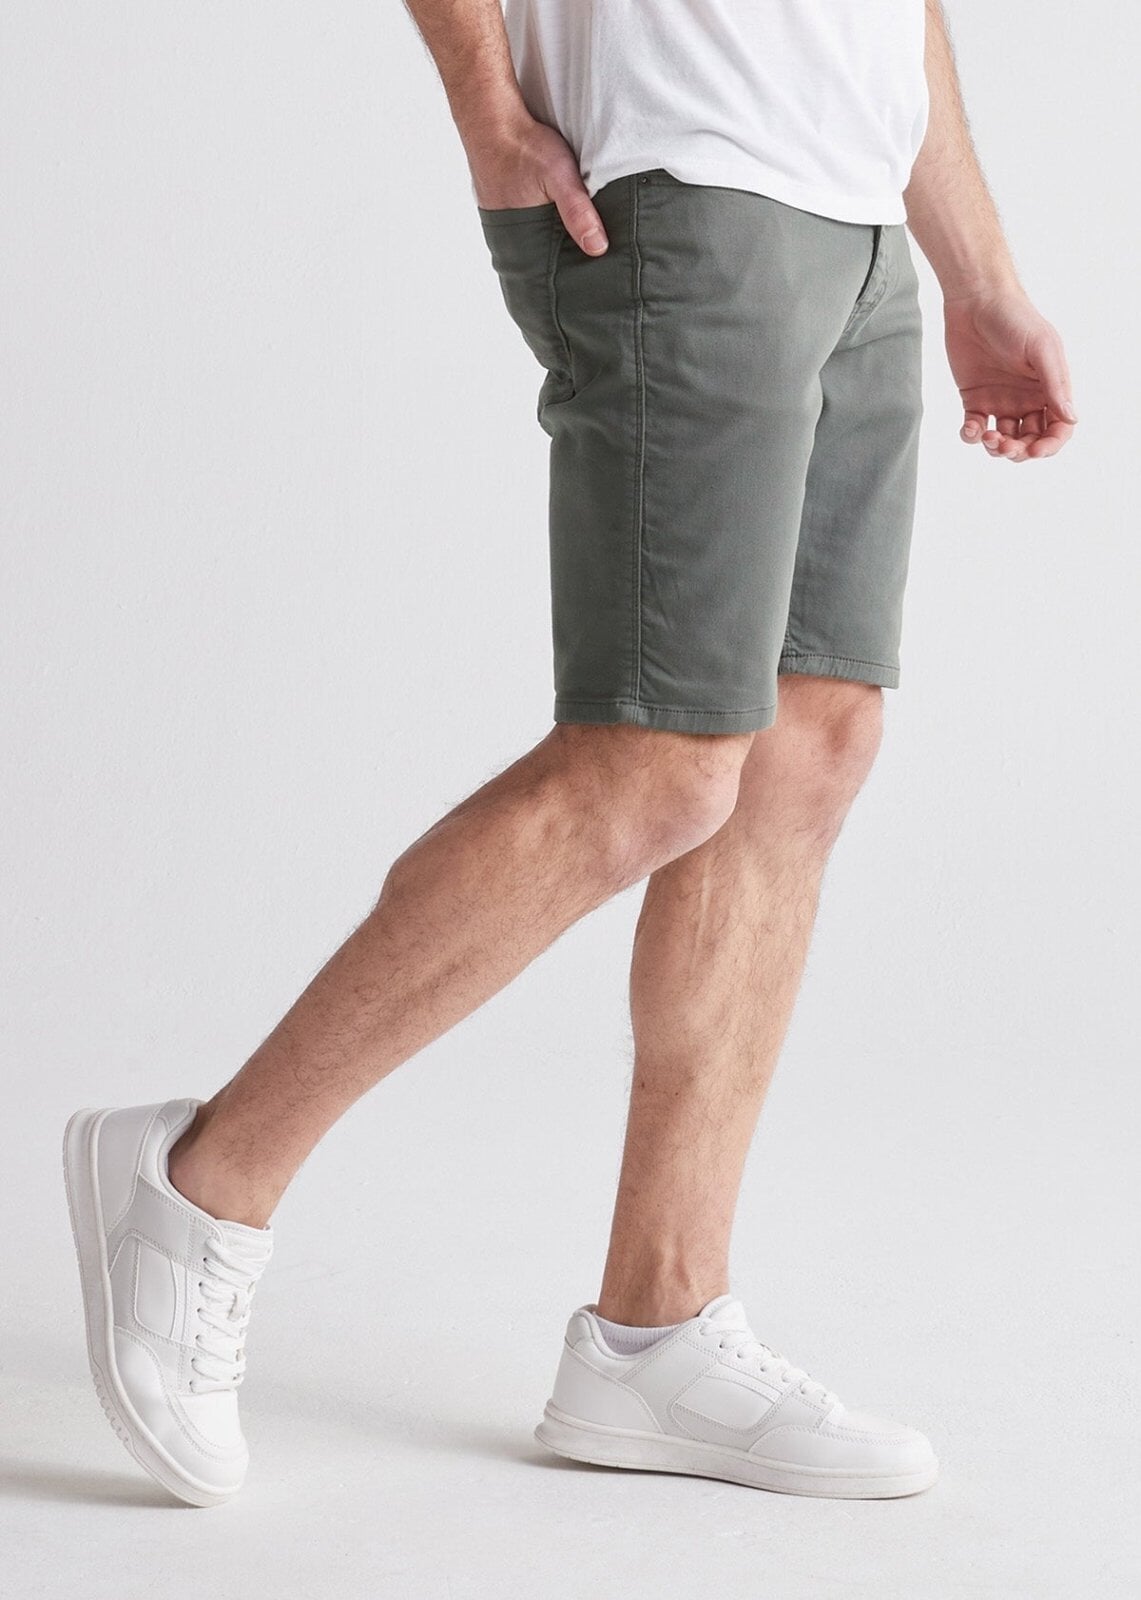 Men's Grey Slim Fit Stretch Short Side